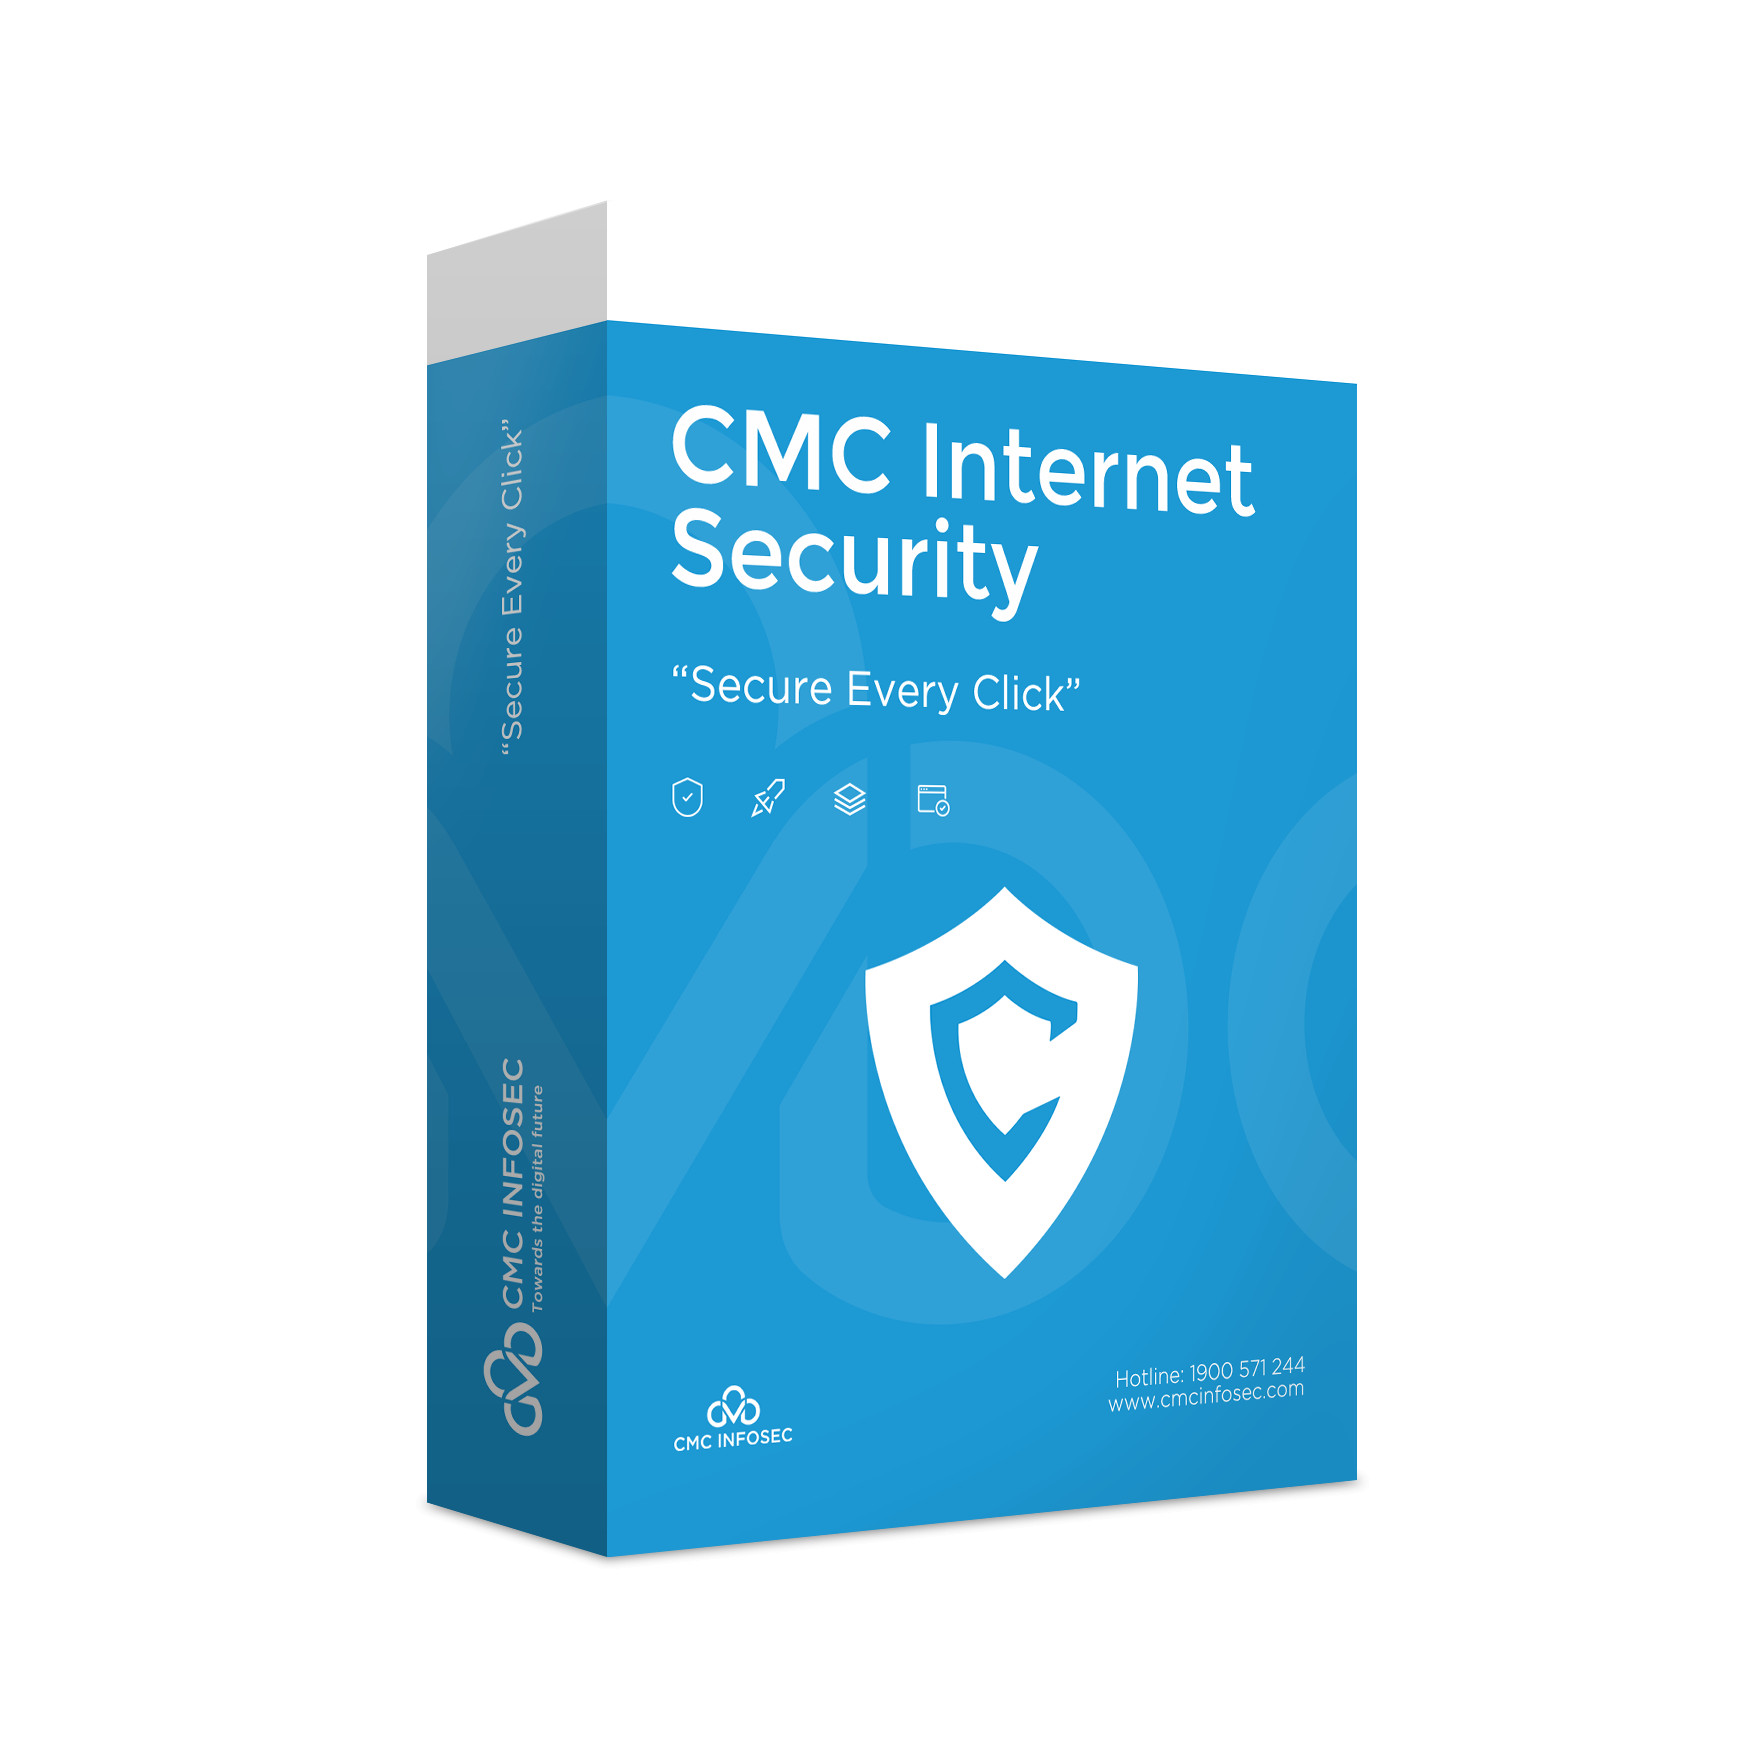 Phần mềm diệt virus CMC Internet Security 12 tháng - Chính hãng